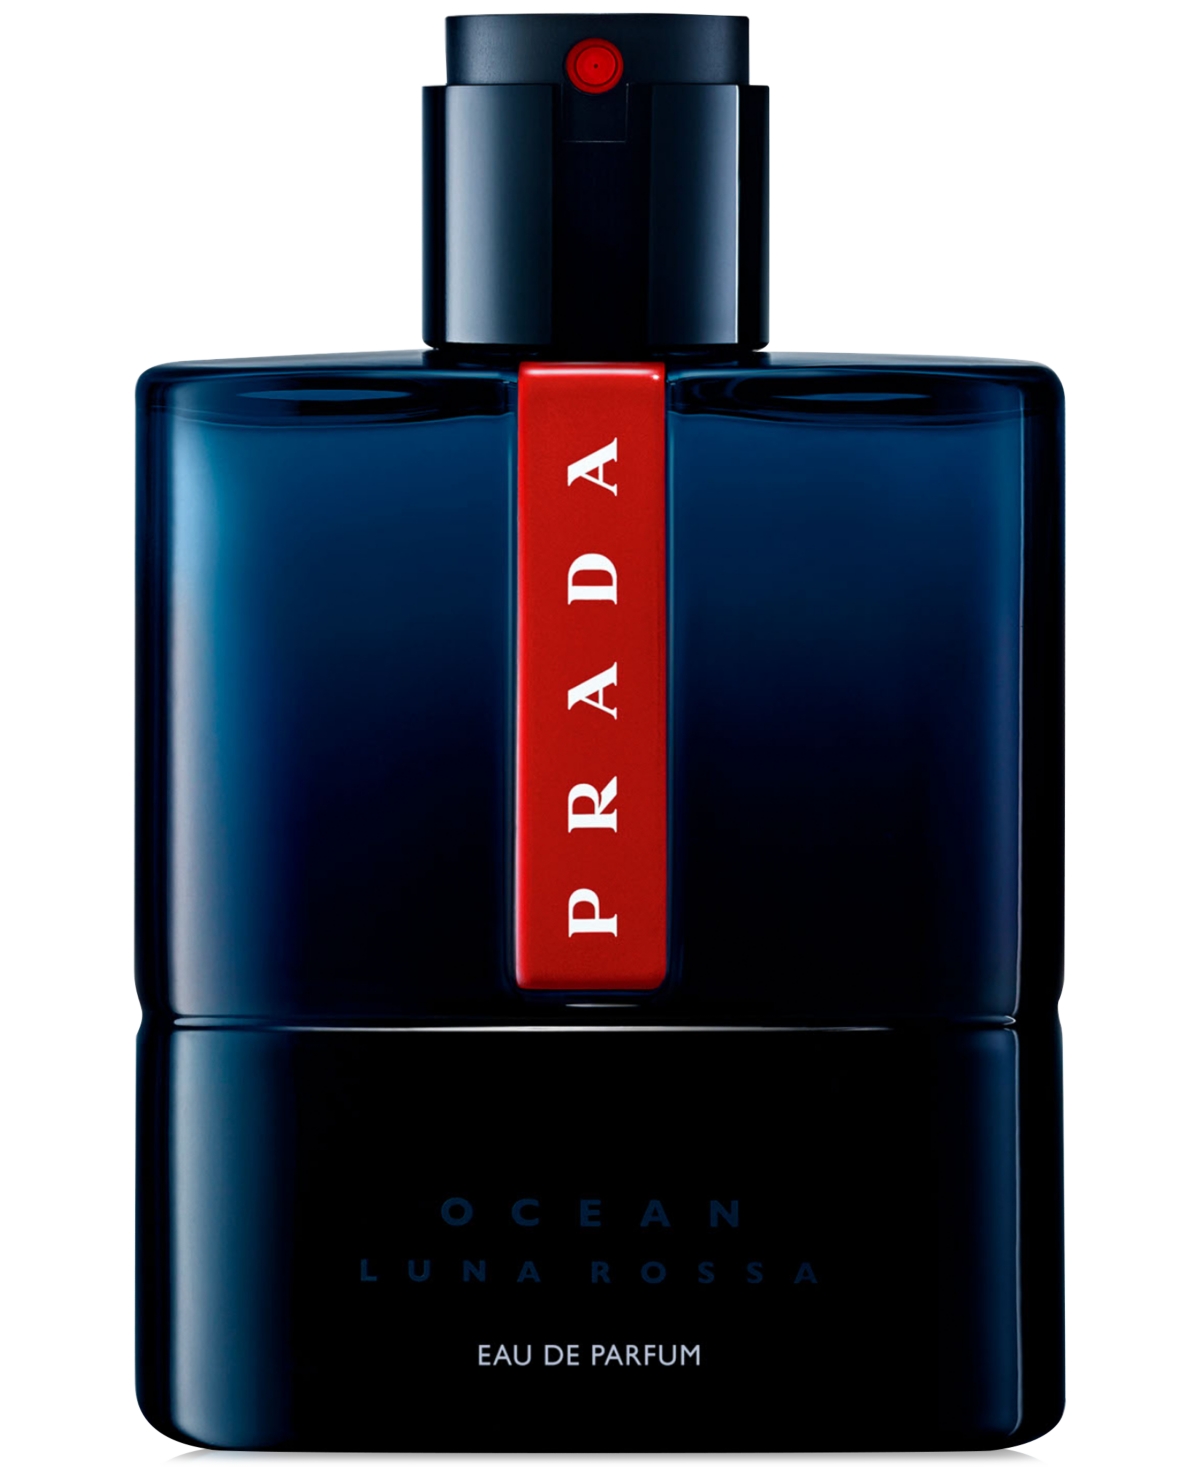 Prada Men's Luna Rossa Ocean Eau De Parfum Spray, 3.3 Oz. In No Color